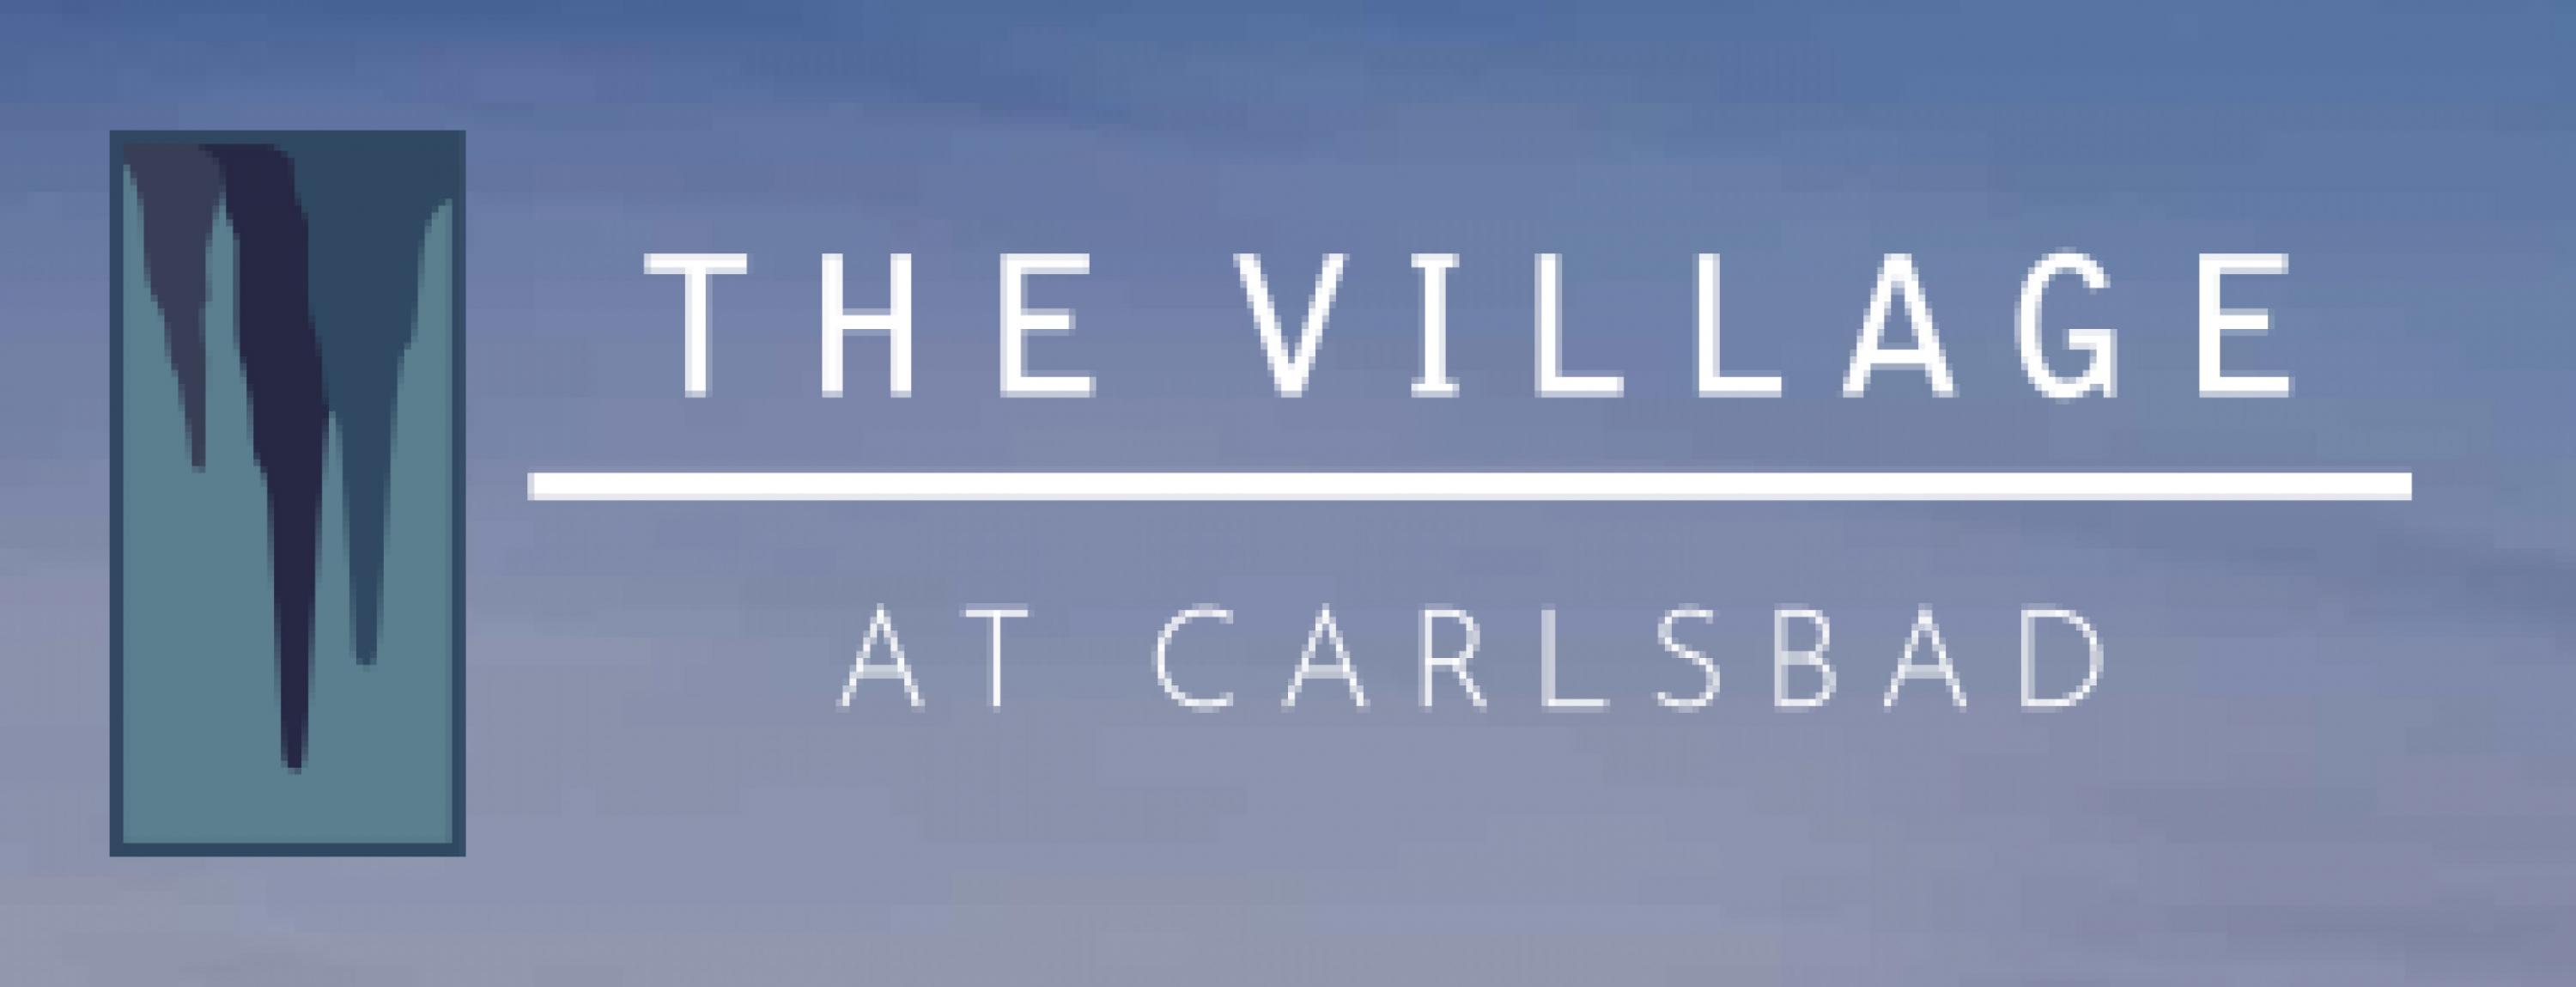 The Village at Carlsbad's Logo